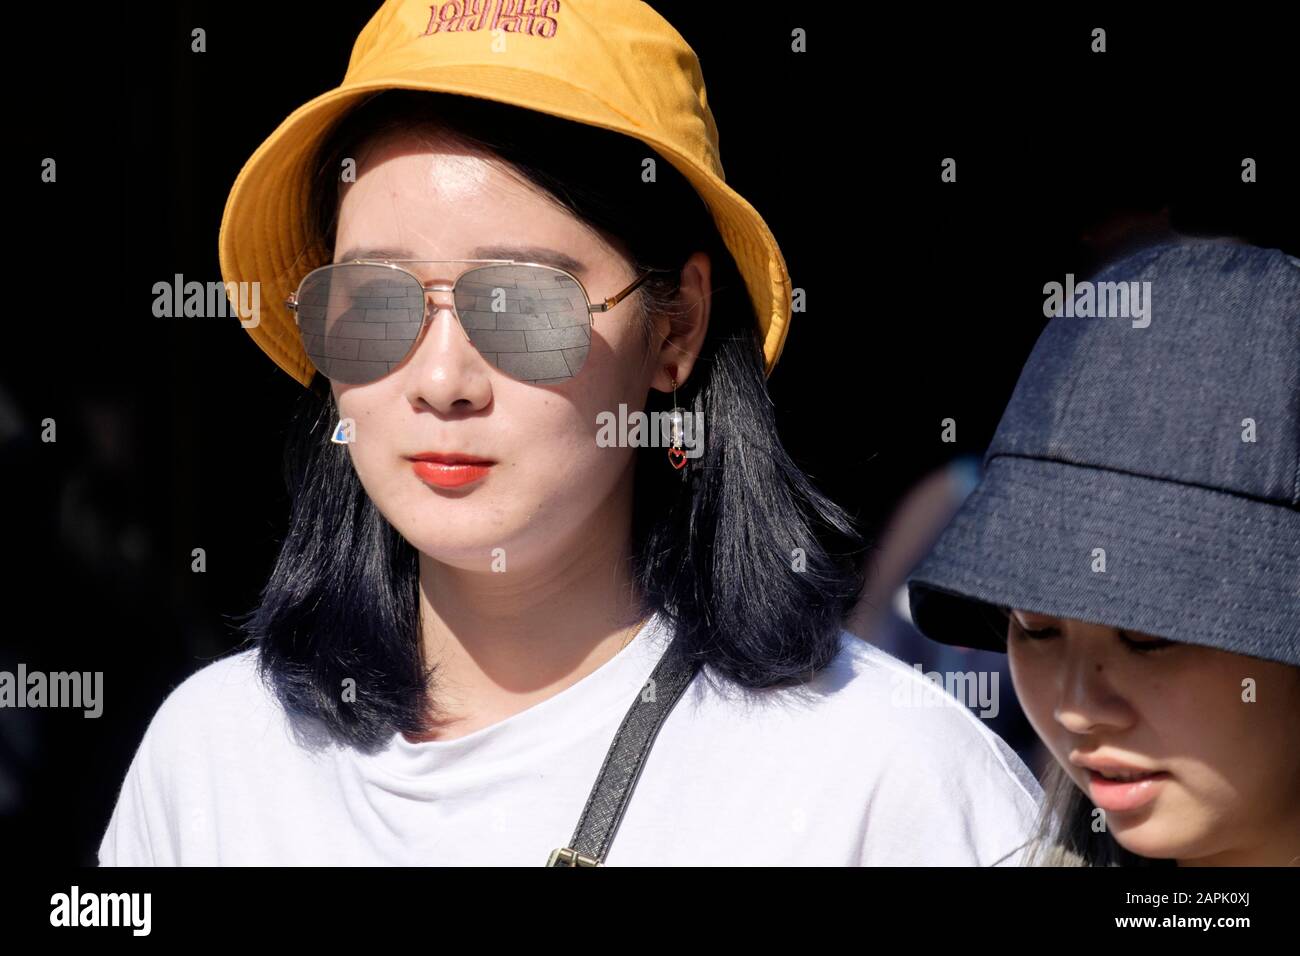 London Street: Mujer, 20s, chino étnico, gafas de sol, sombrero. Foto de stock